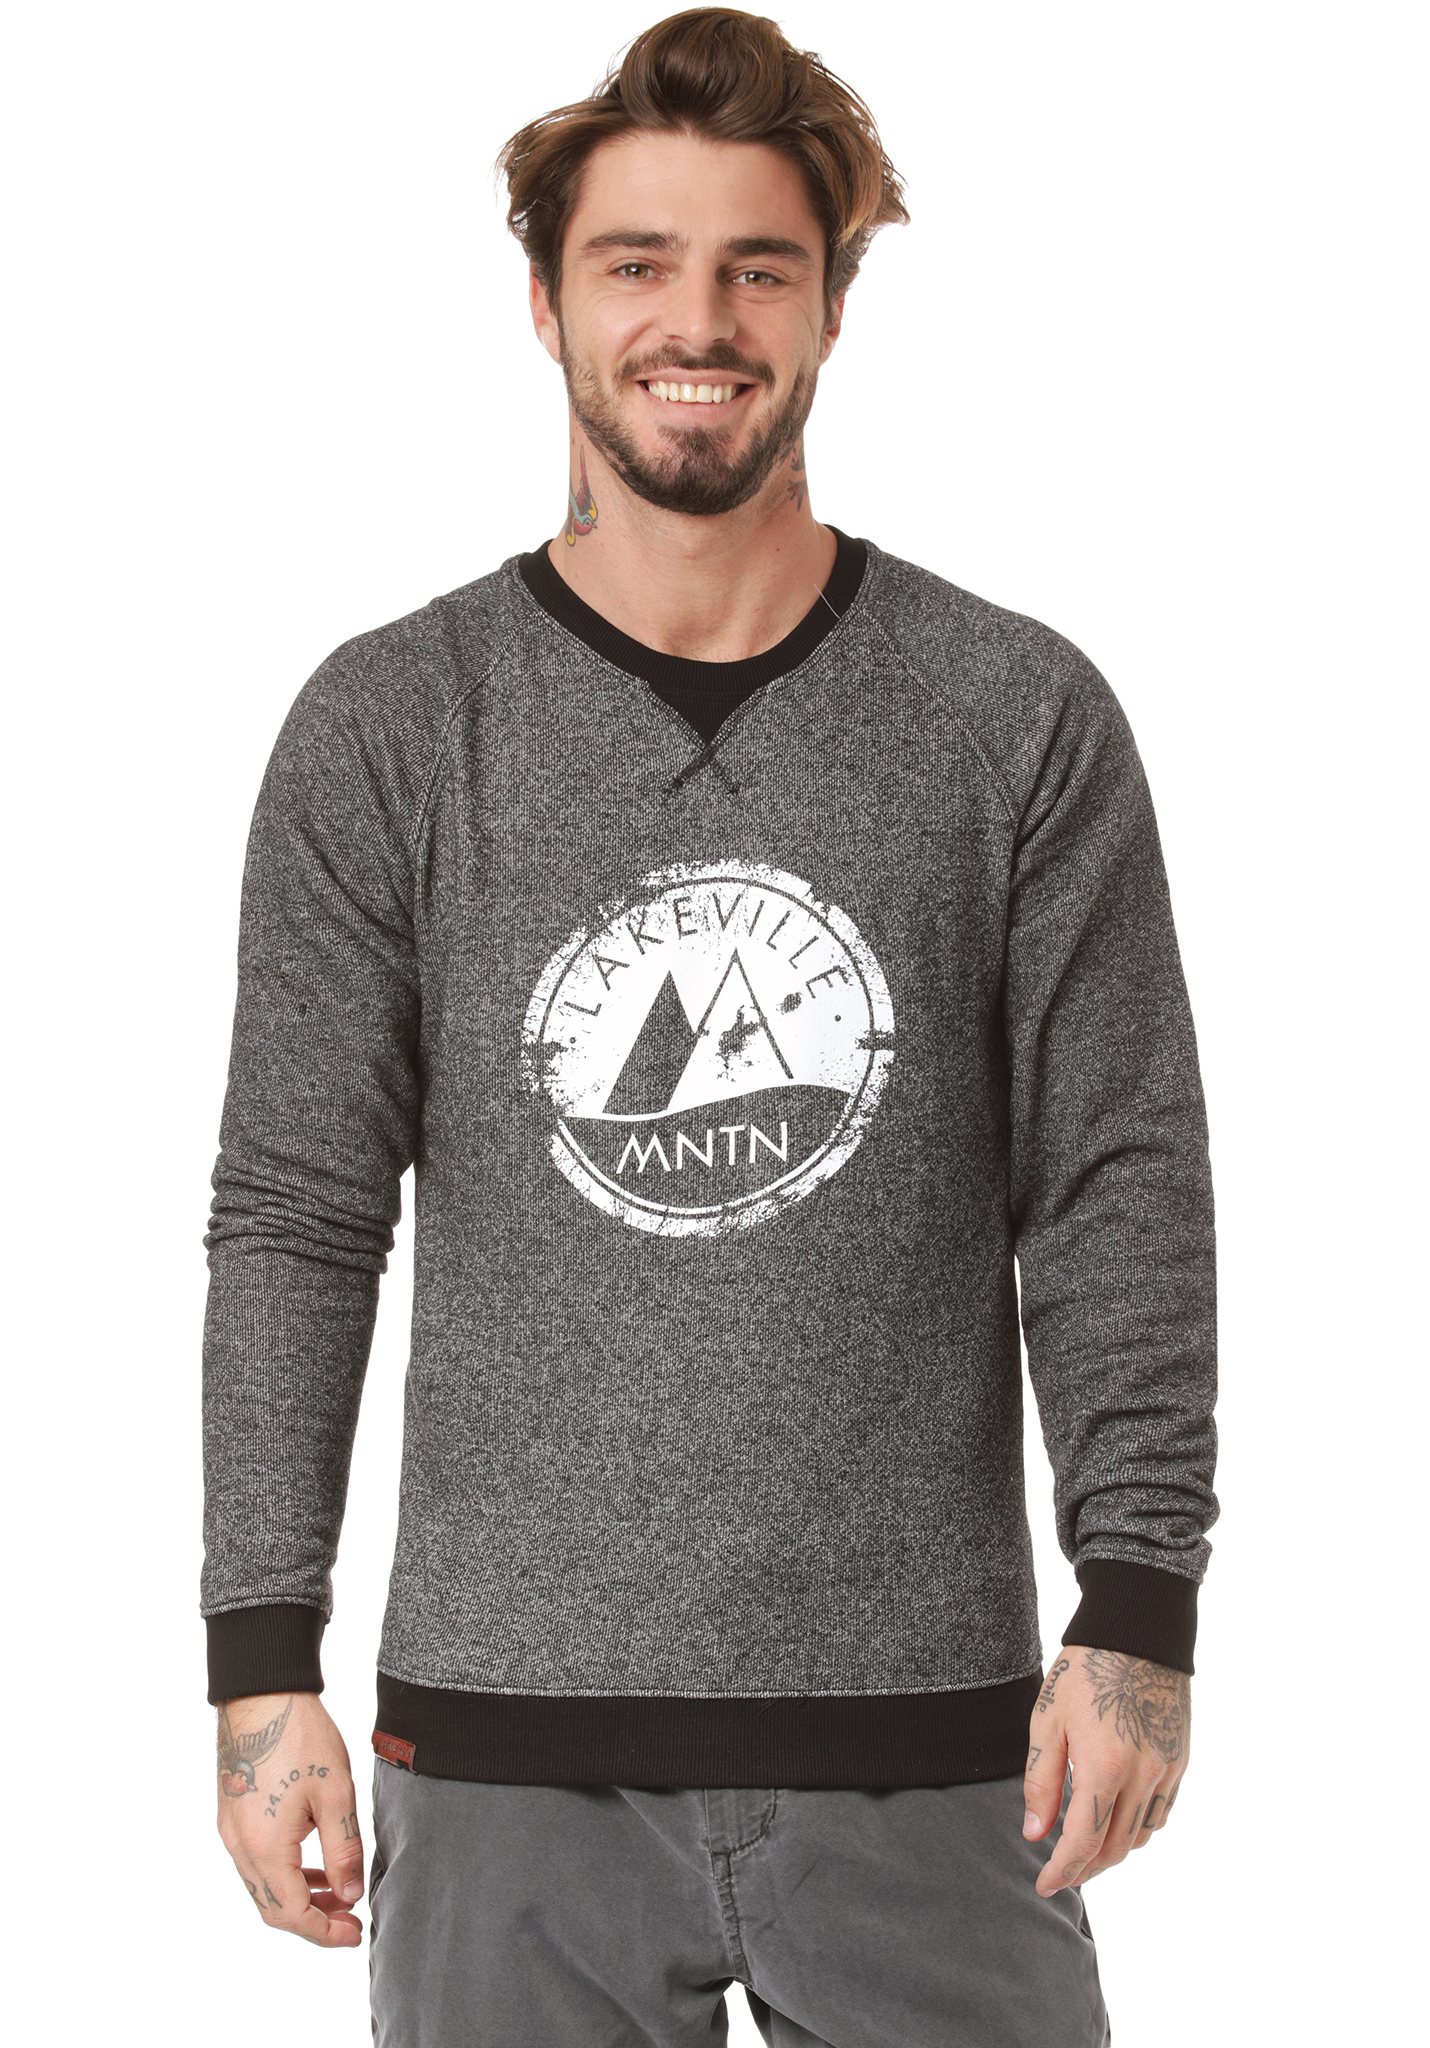 Lakeville Mountain Dades Sweatshirt schwarz meliert XXL